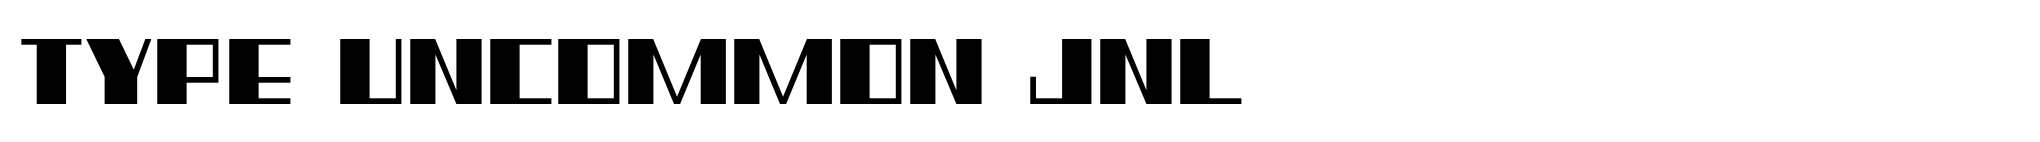 Type Uncommon JNL image